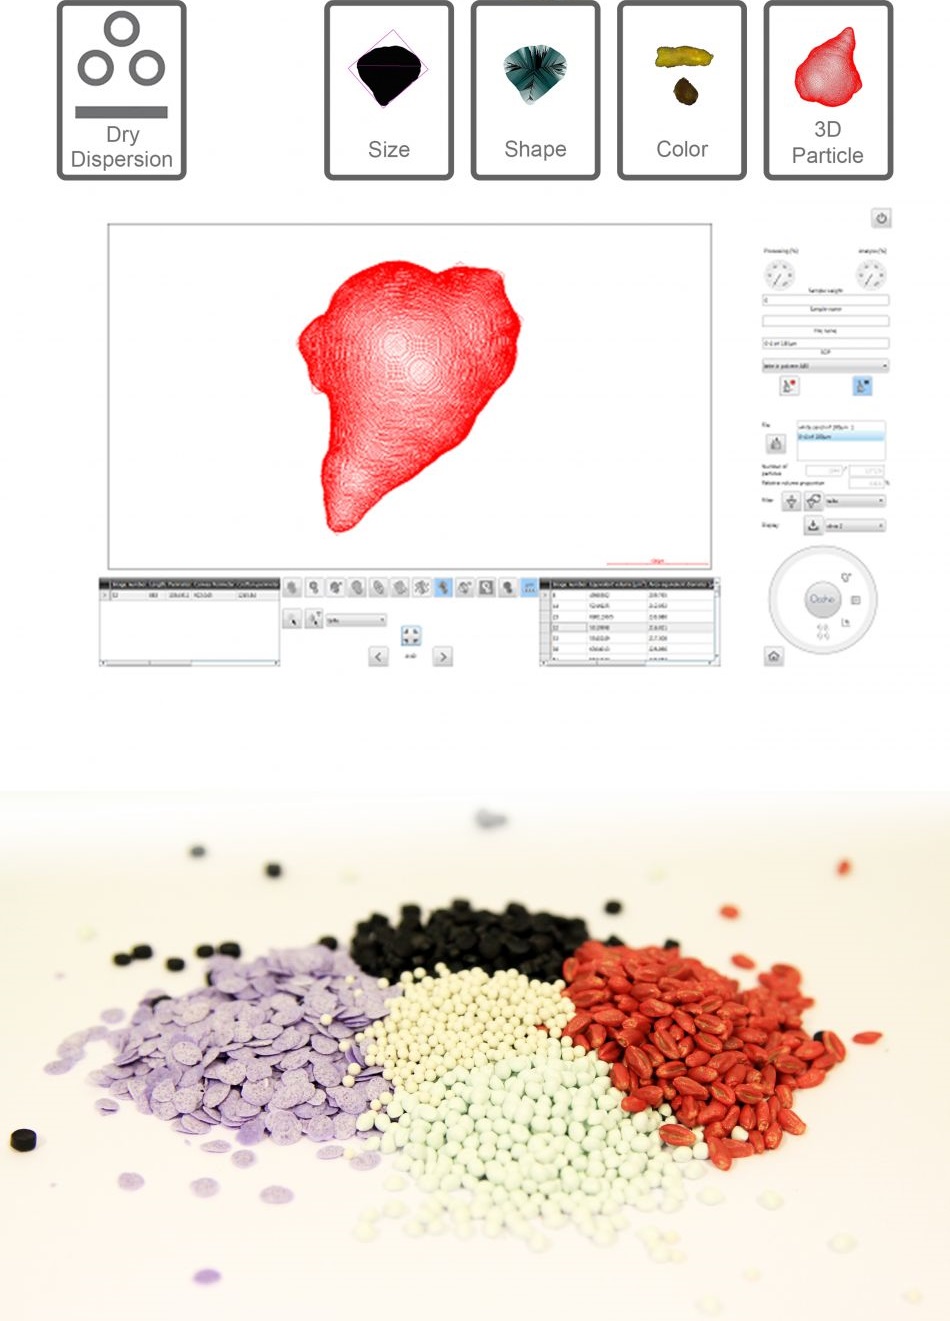 Morpho 3D - Analyse de taille, forme et couleur de particules